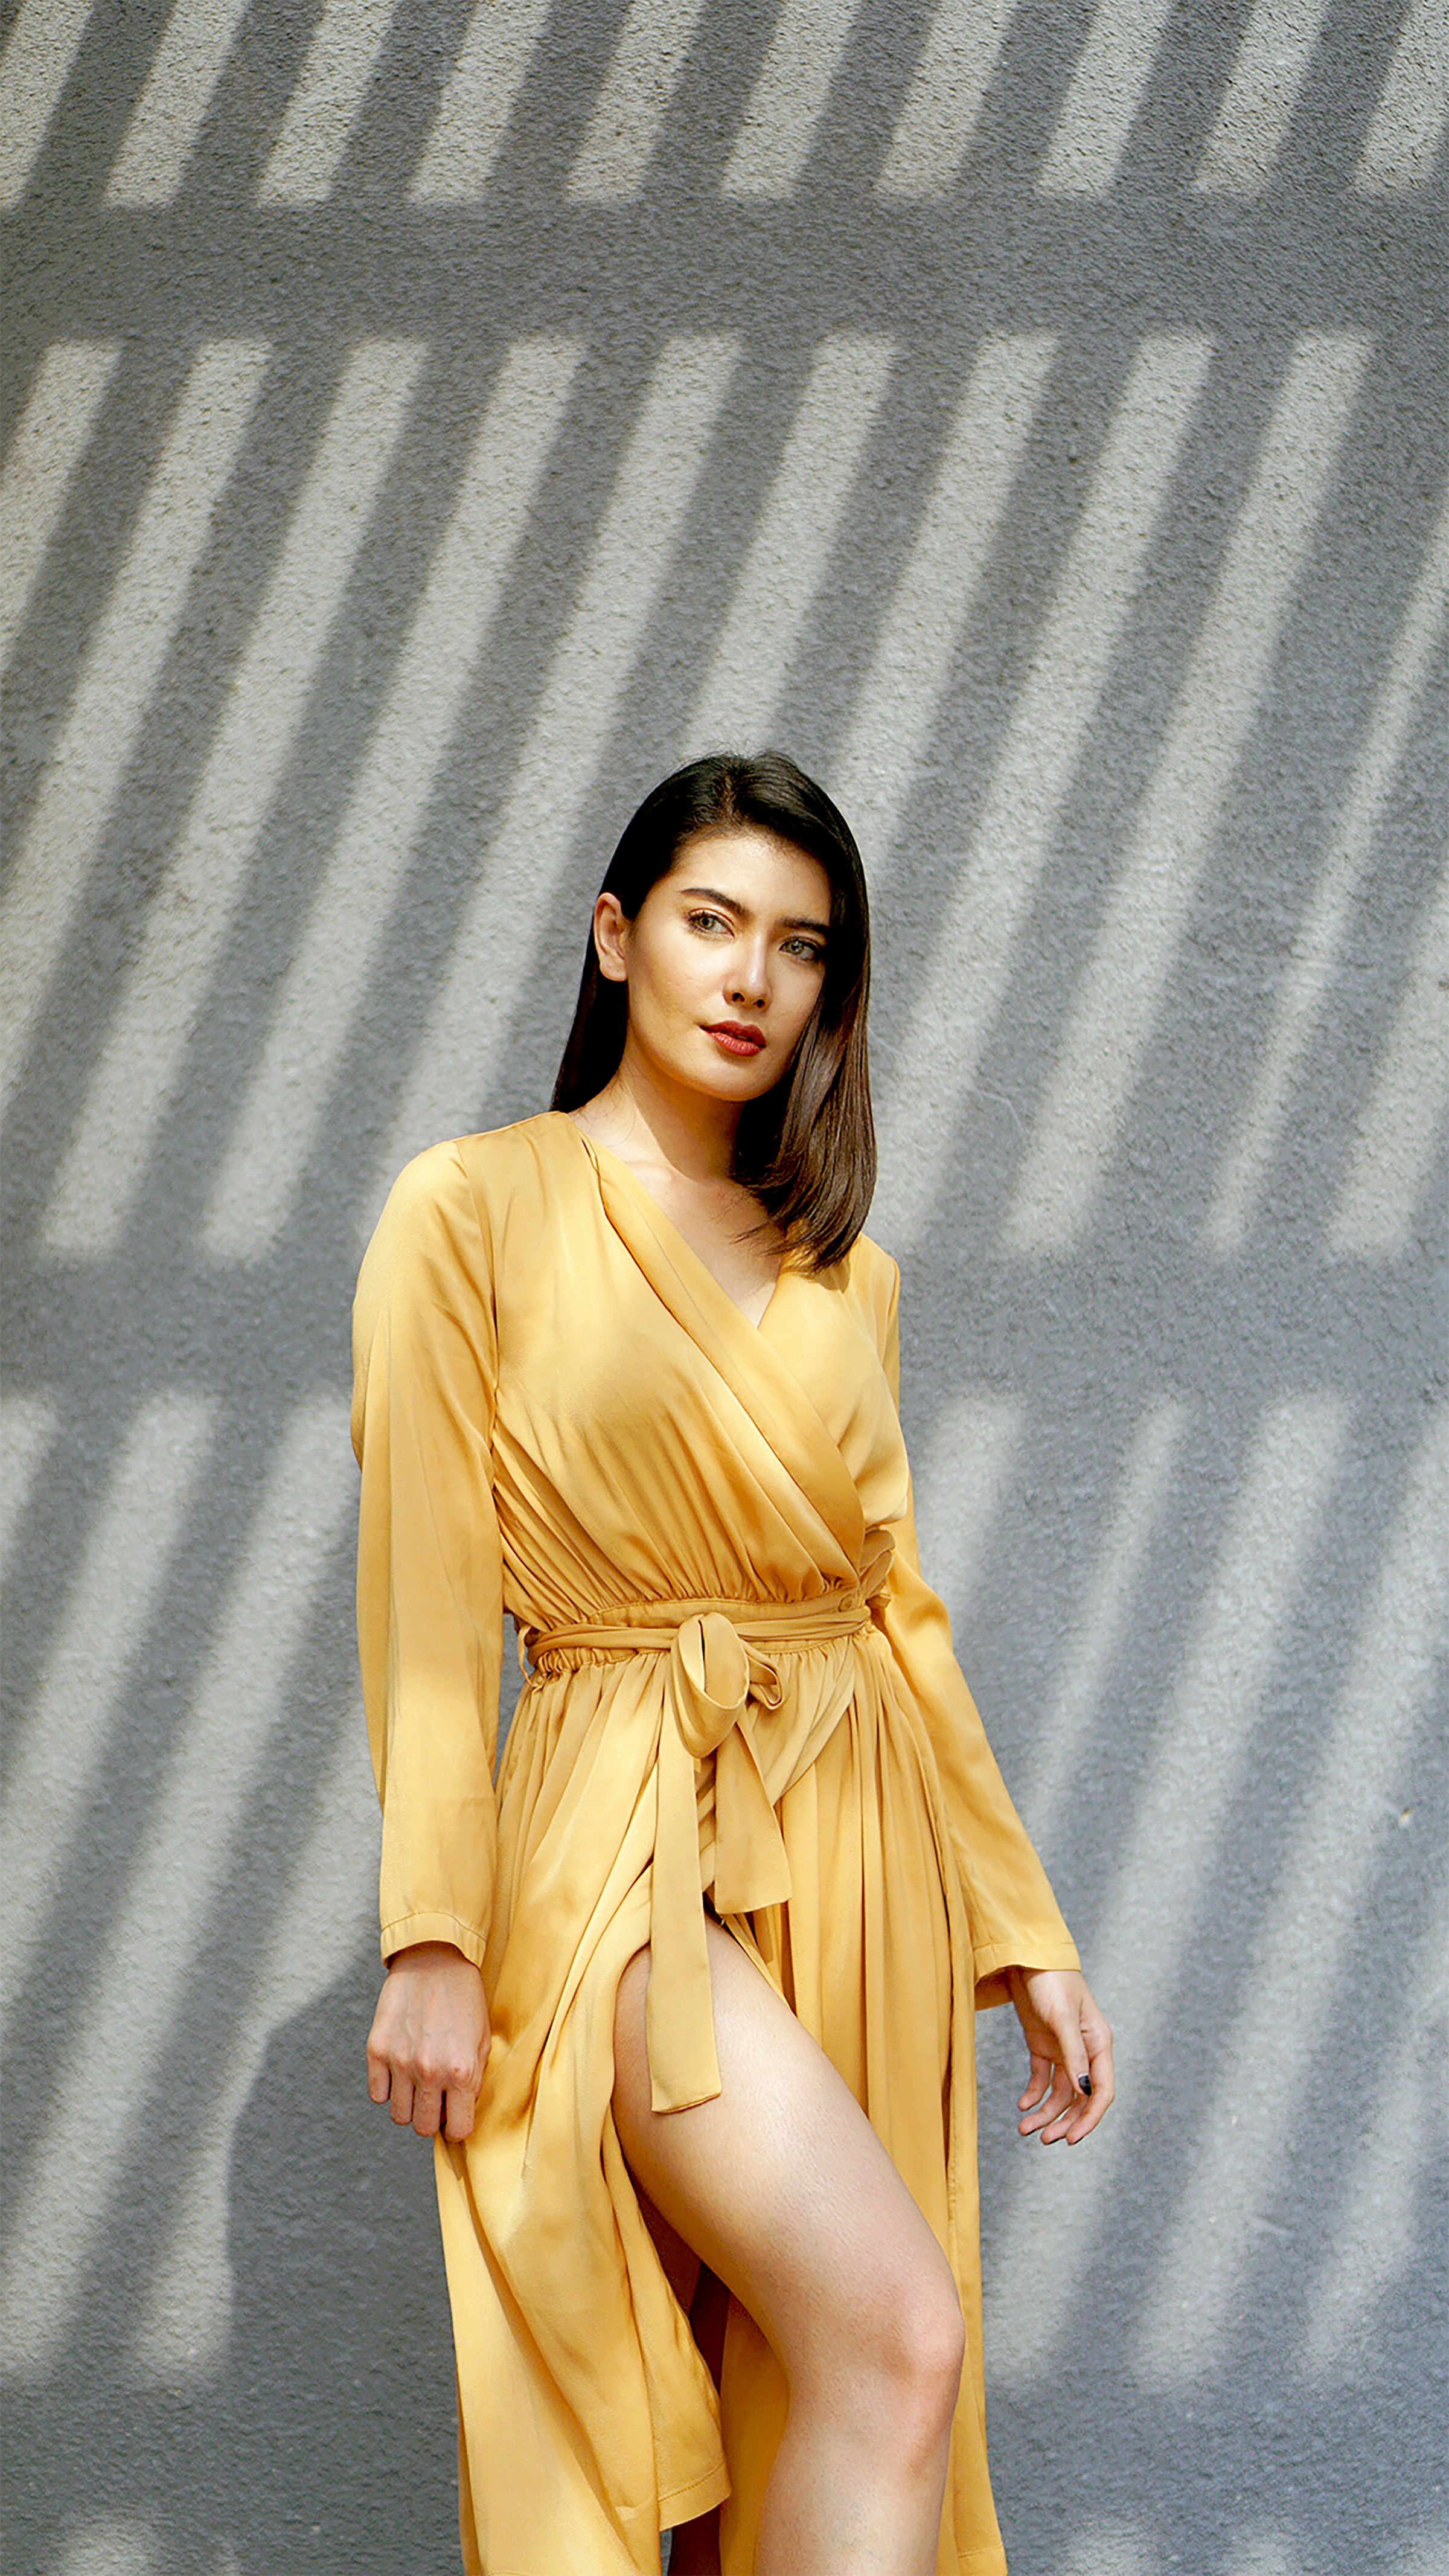 A woman wearing a yellow dress | Source: Unsplash